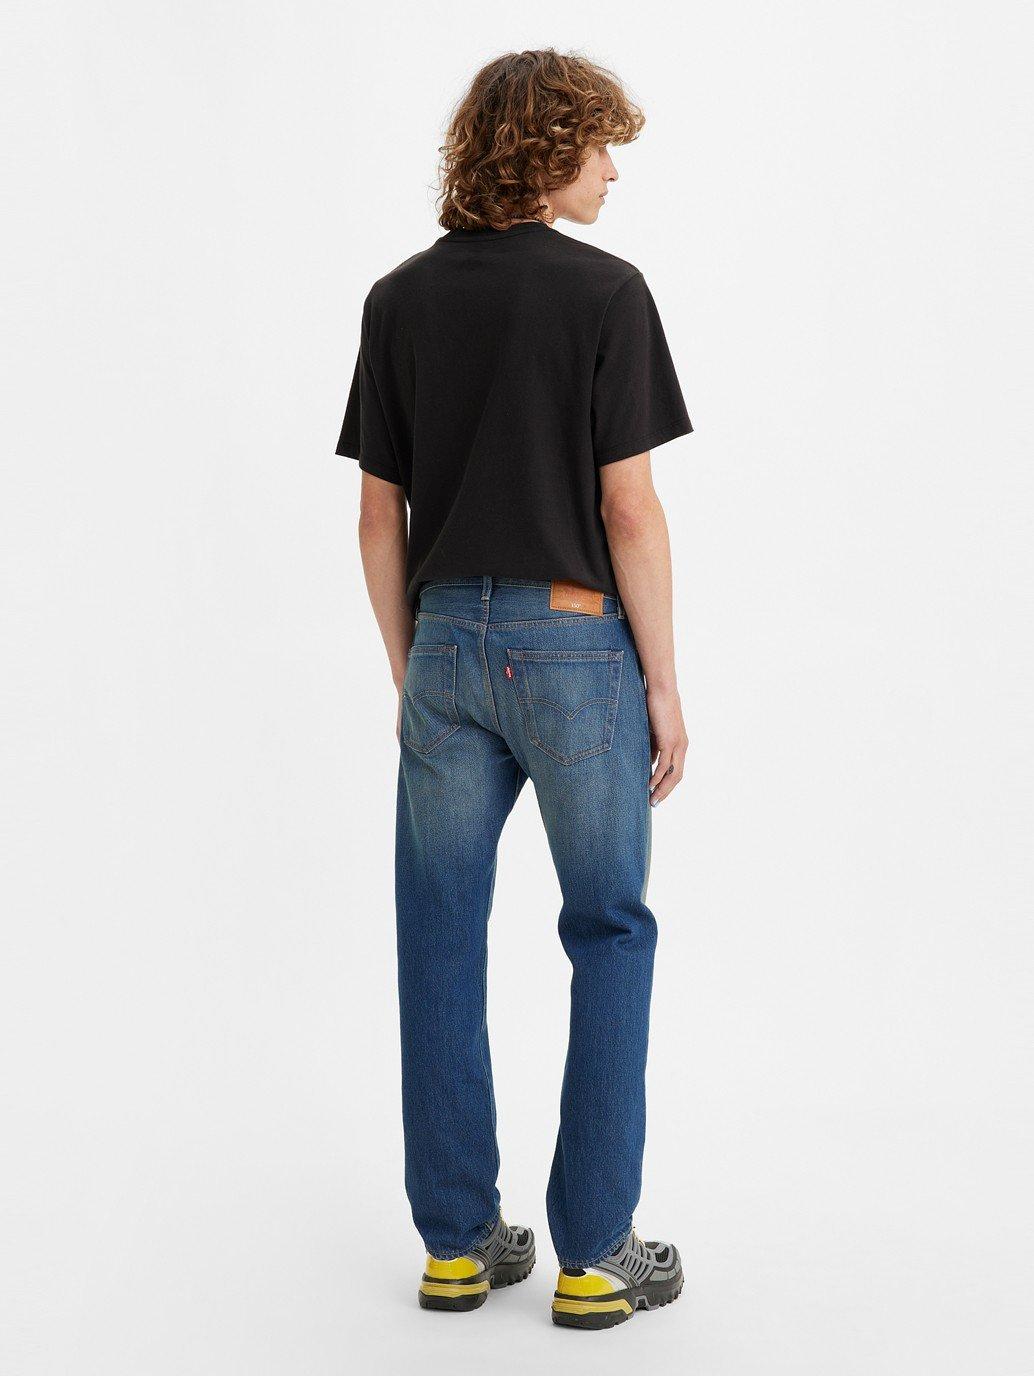 Buy Levi's® Men's 501® Original Jeans | Levi’s® Official Online Store MY